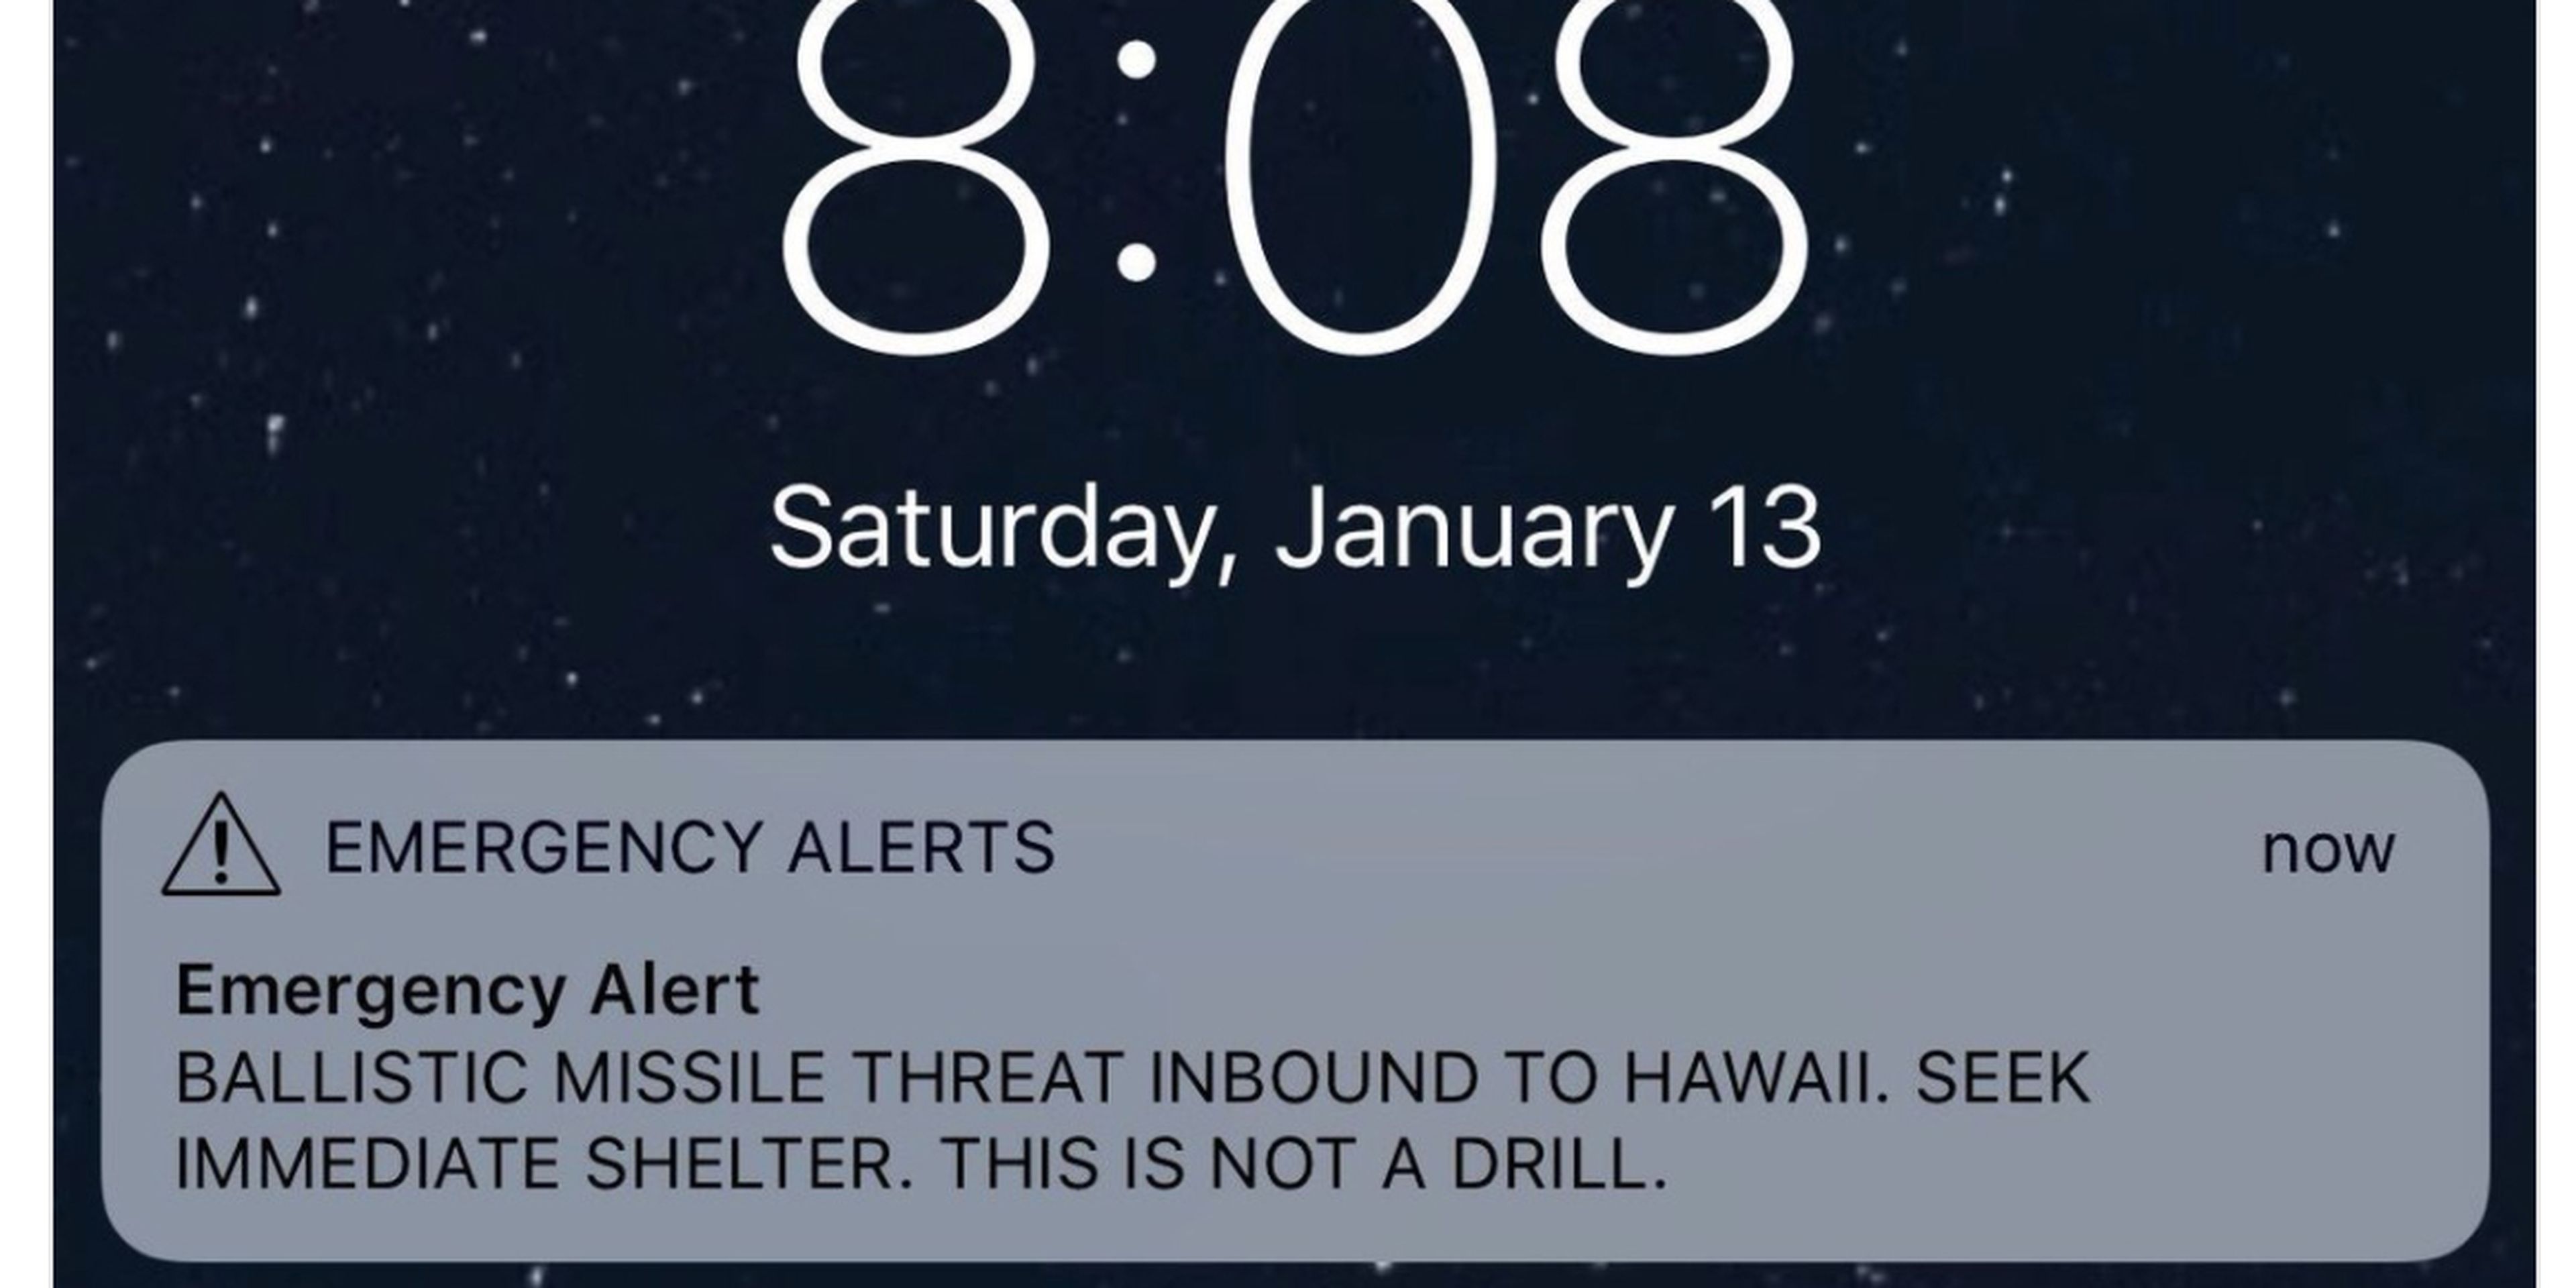 Falsa alarma por misil en Hawai